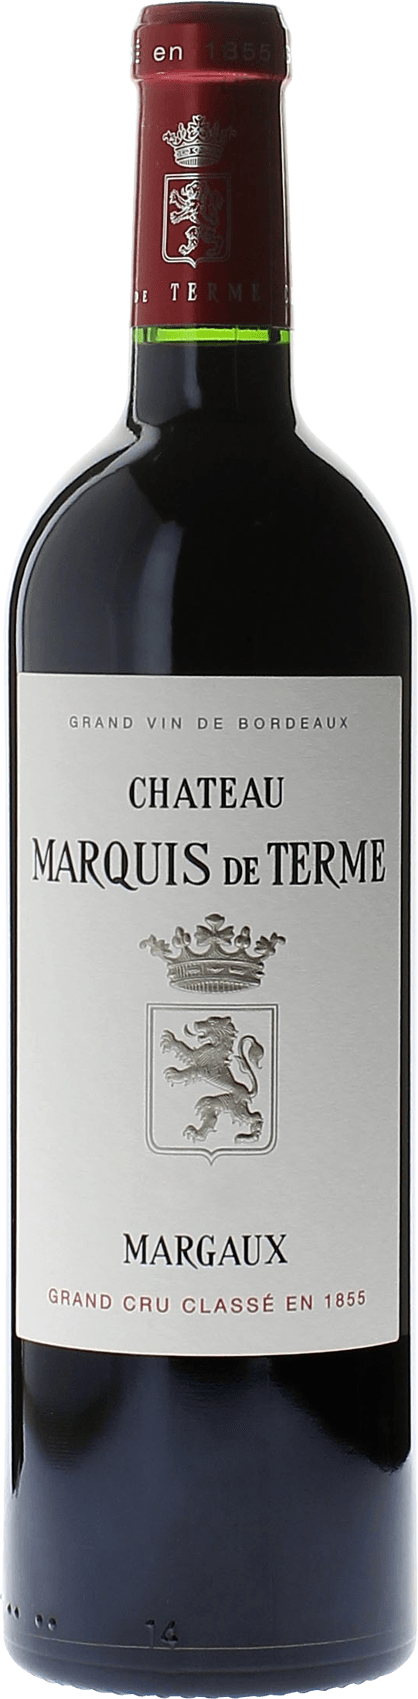 Marquis de terme 1983 4me Grand cru class Margaux, Bordeaux rouge